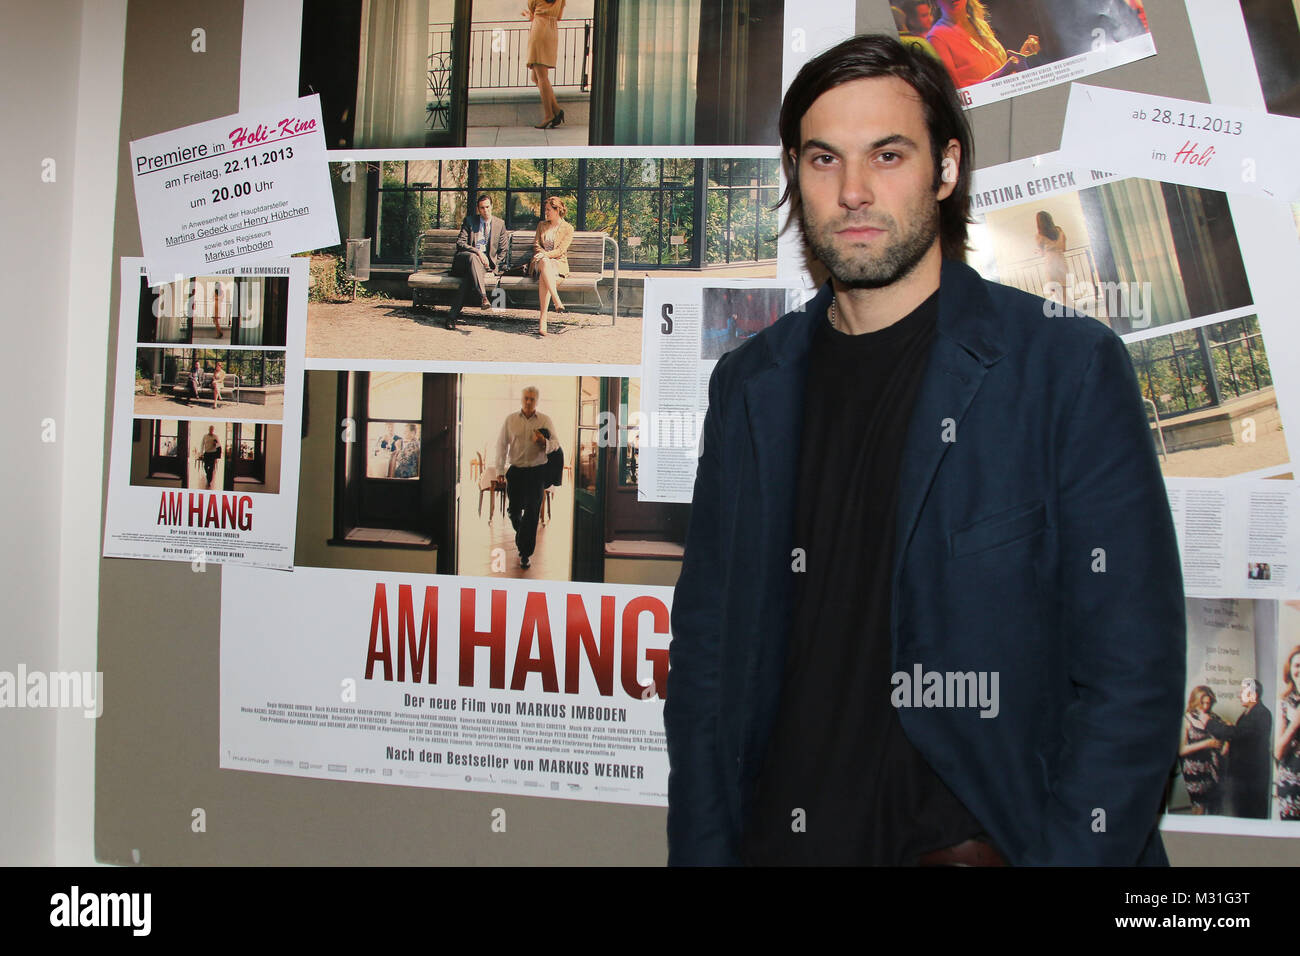 Max Simonischek, Premiere 'AM HANG', Hambourg, 22.11.2013 Banque D'Images